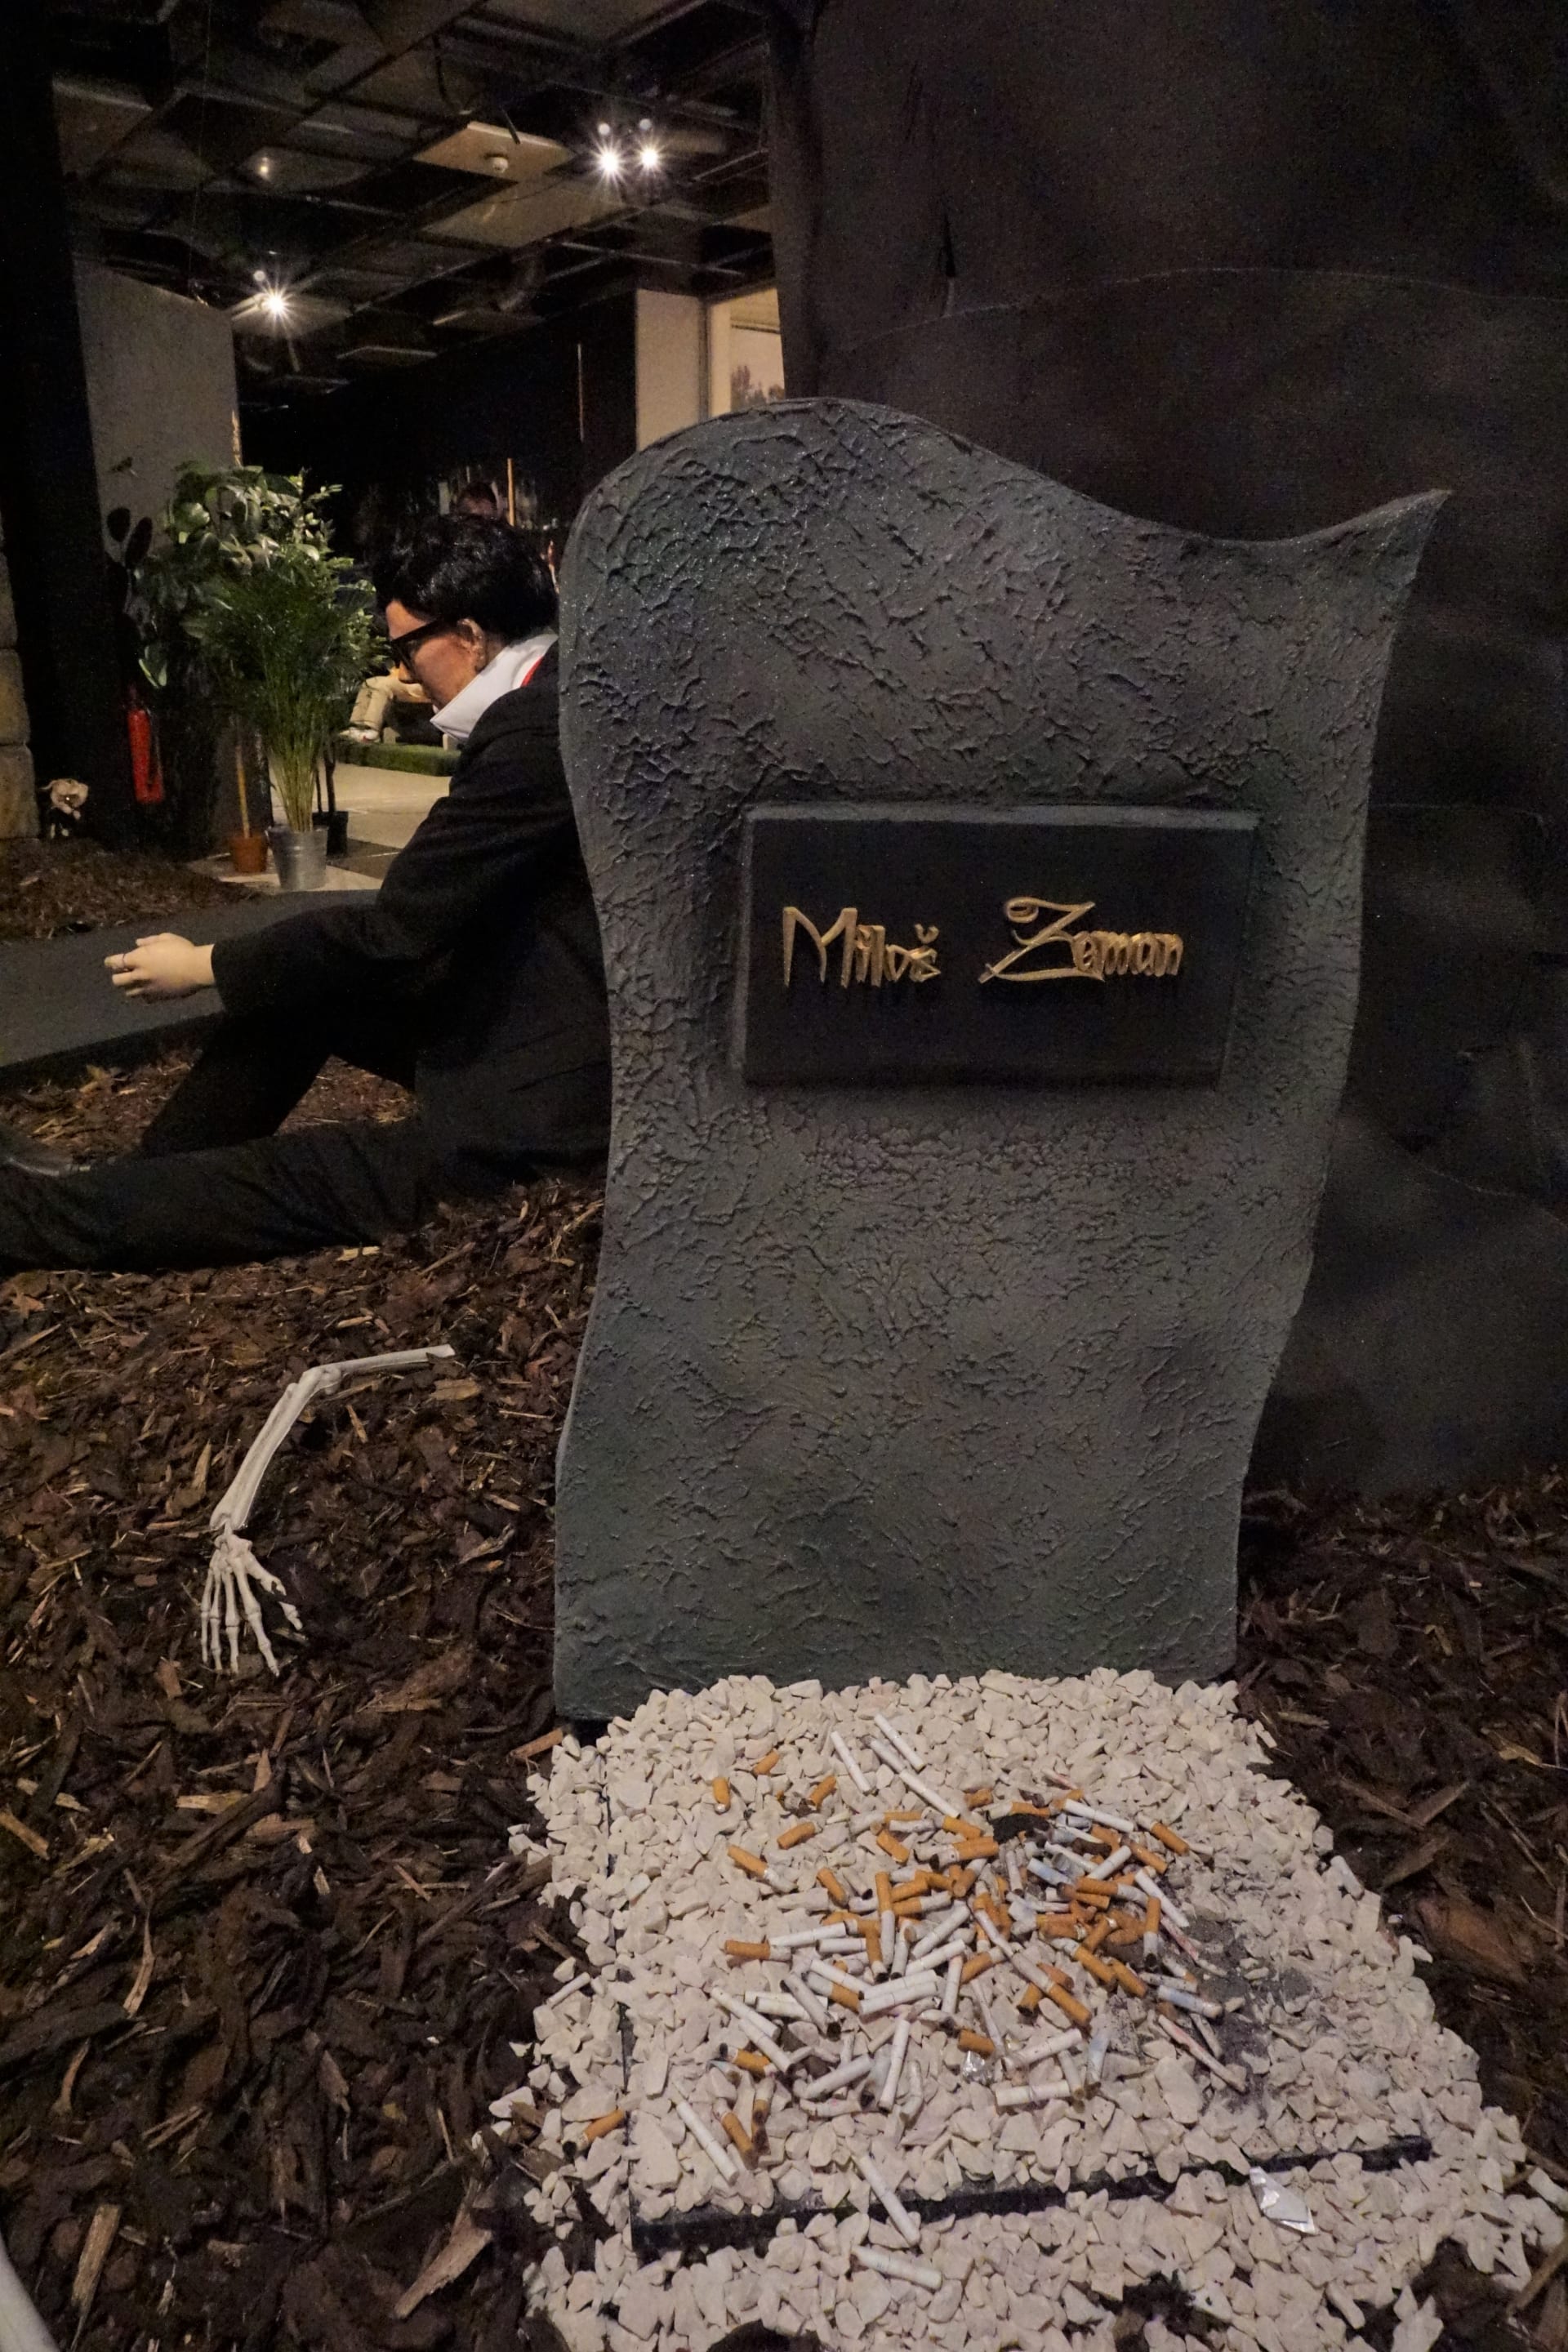 Hrob zde má i prezident Miloš Zeman, přestože je stále živ. Jeho místo posledního odpočinku pak doplňují vysypané cigarety, poněvadž je Zeman náruživým kuřákem. Kousek od jeho hrobu je pak vidět postava se zoufalým výrazem ve tváři, která se náramně podobná Zemanovu mluvčímu Jiřímu Ovčáčkovi.